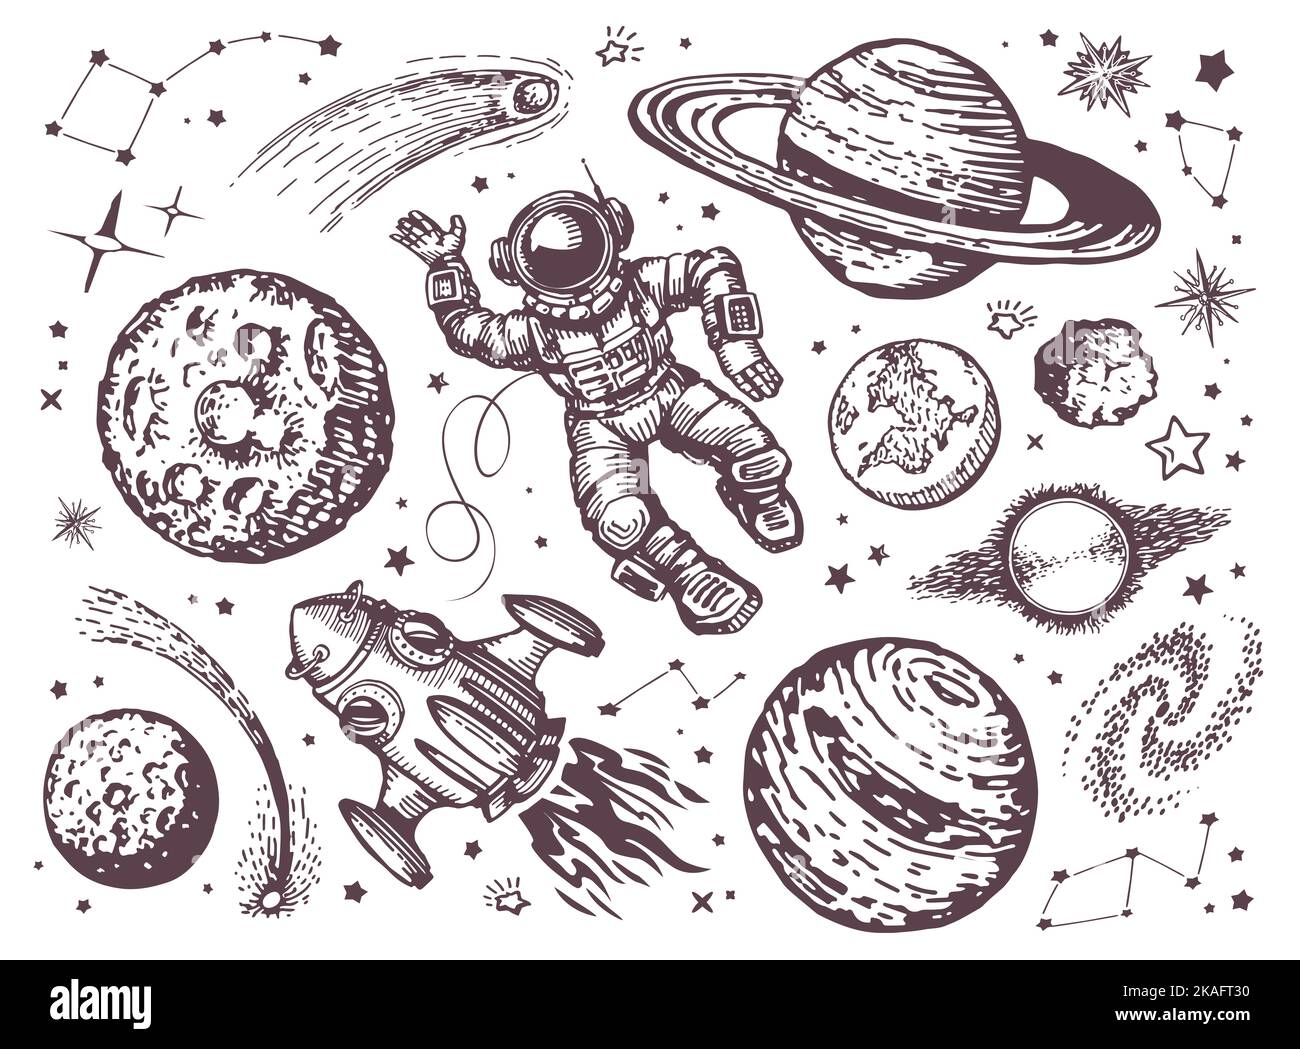 Espace avec planètes, comètes, constellations, étoiles, vaisseau spatial et astronaute. Astronomie, ciel de nuit concept esquisse vintage Banque D'Images